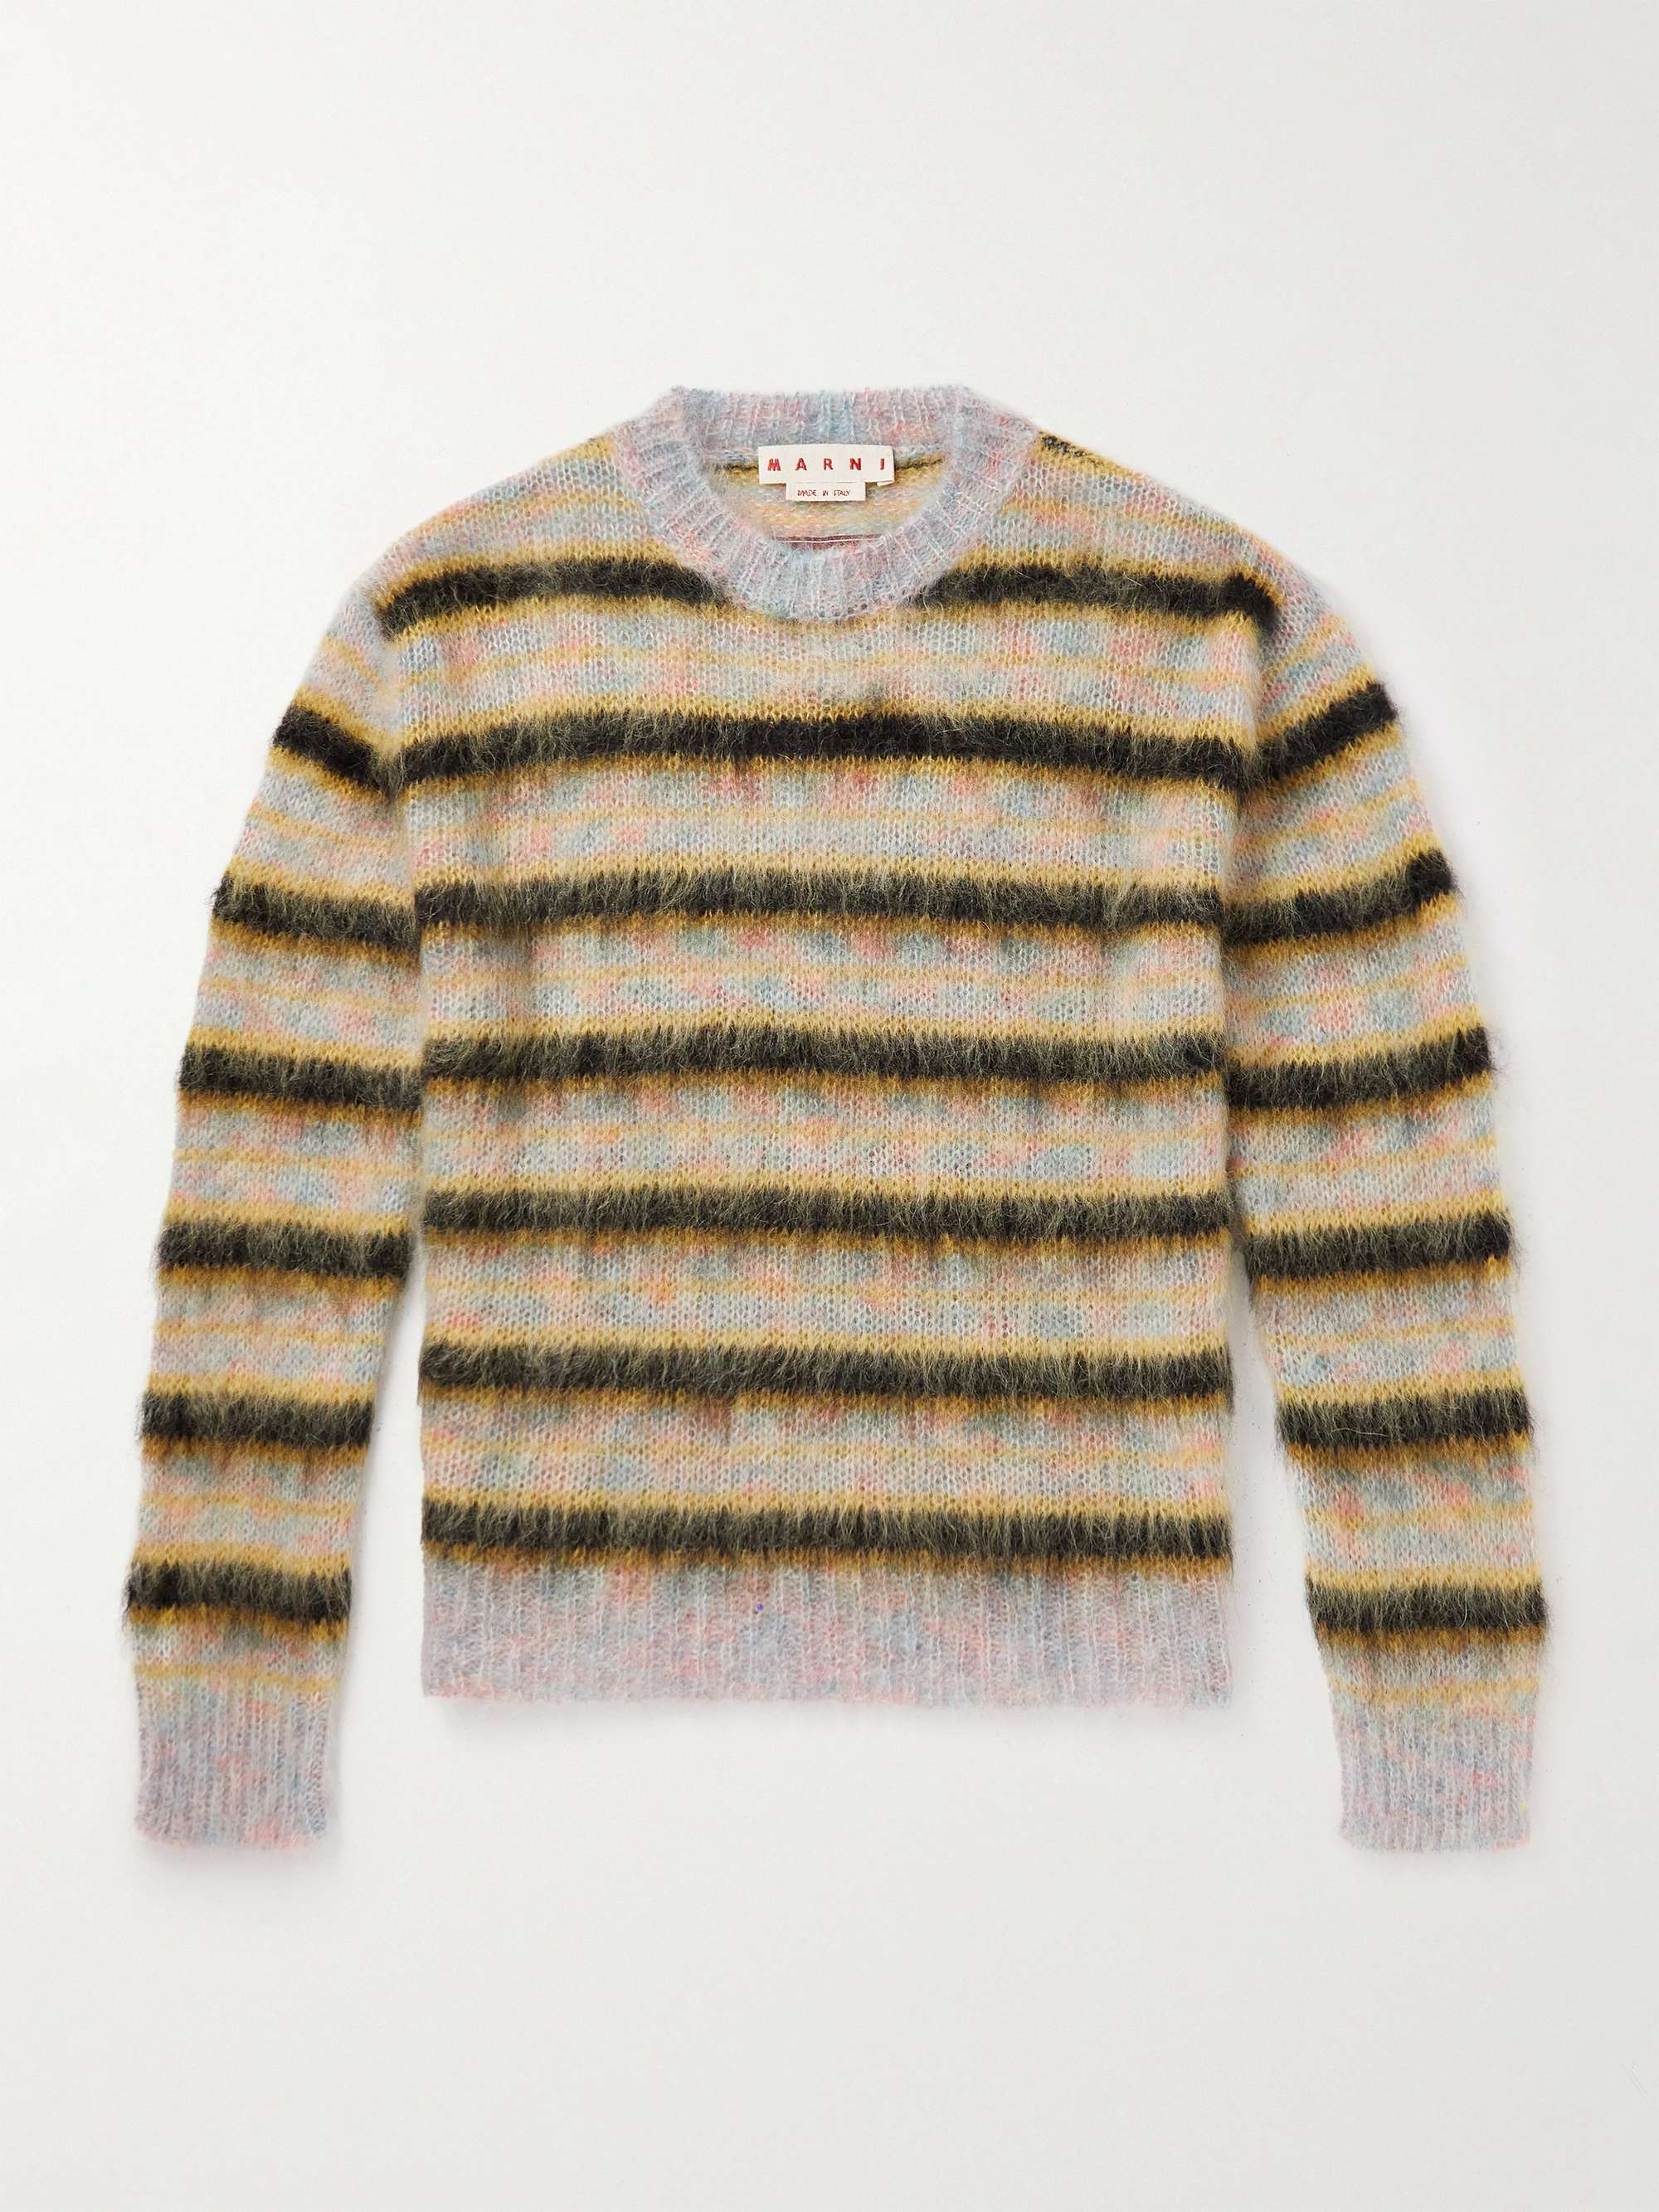 MARNI Striped Mohair-Blend Sweater for Men | MR PORTER